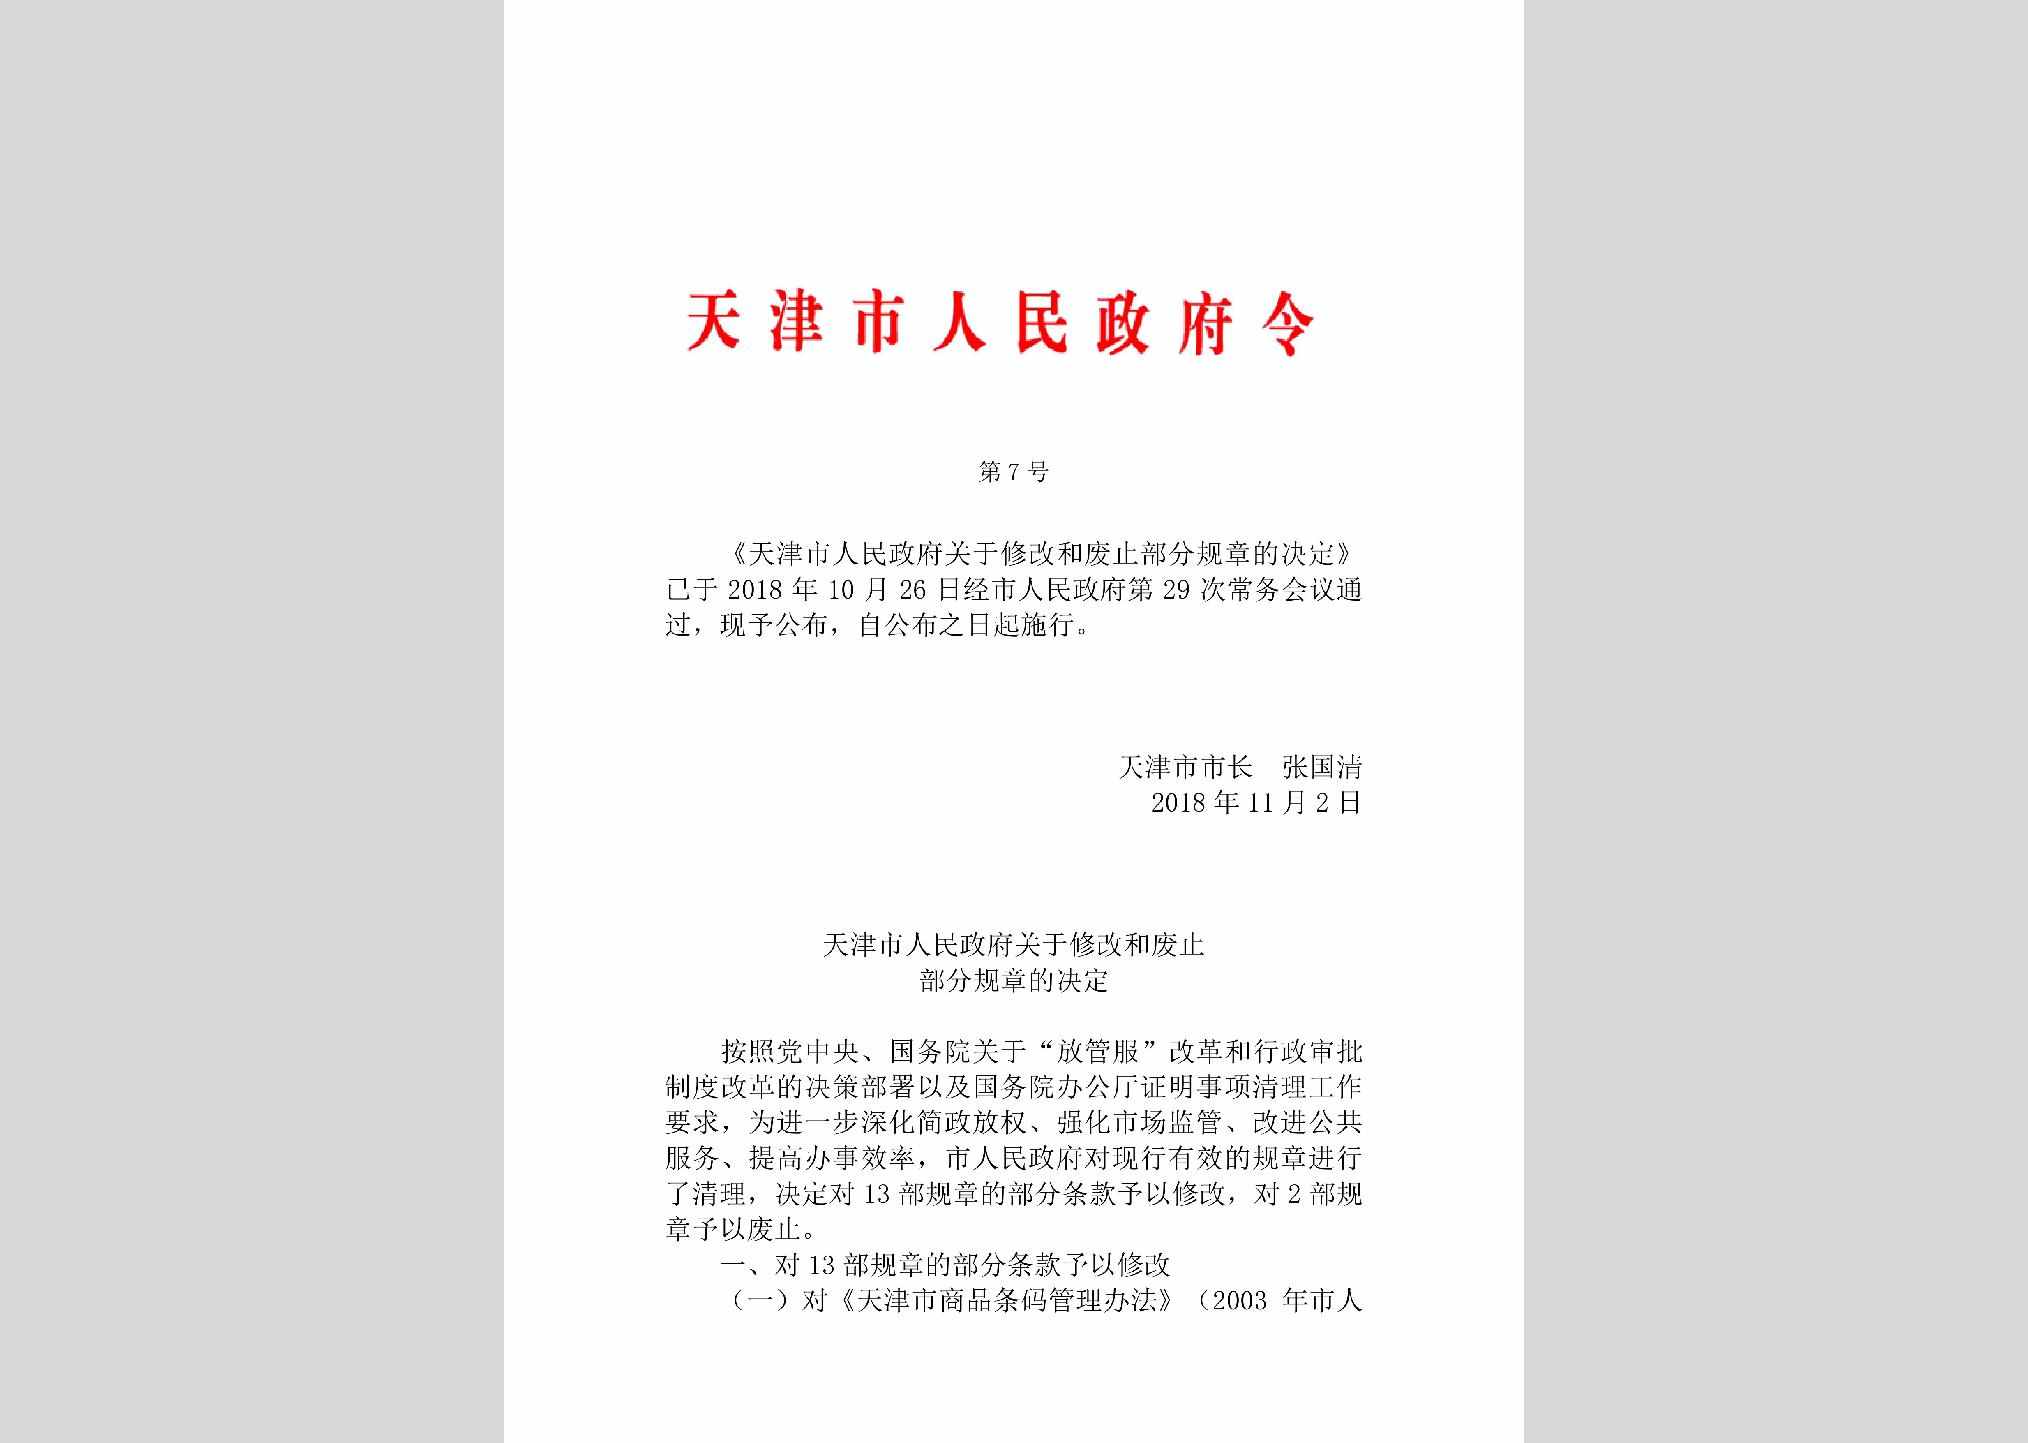 天津市人民政府令第7号：天津市人民政府关于修改和废止部分规章的决定